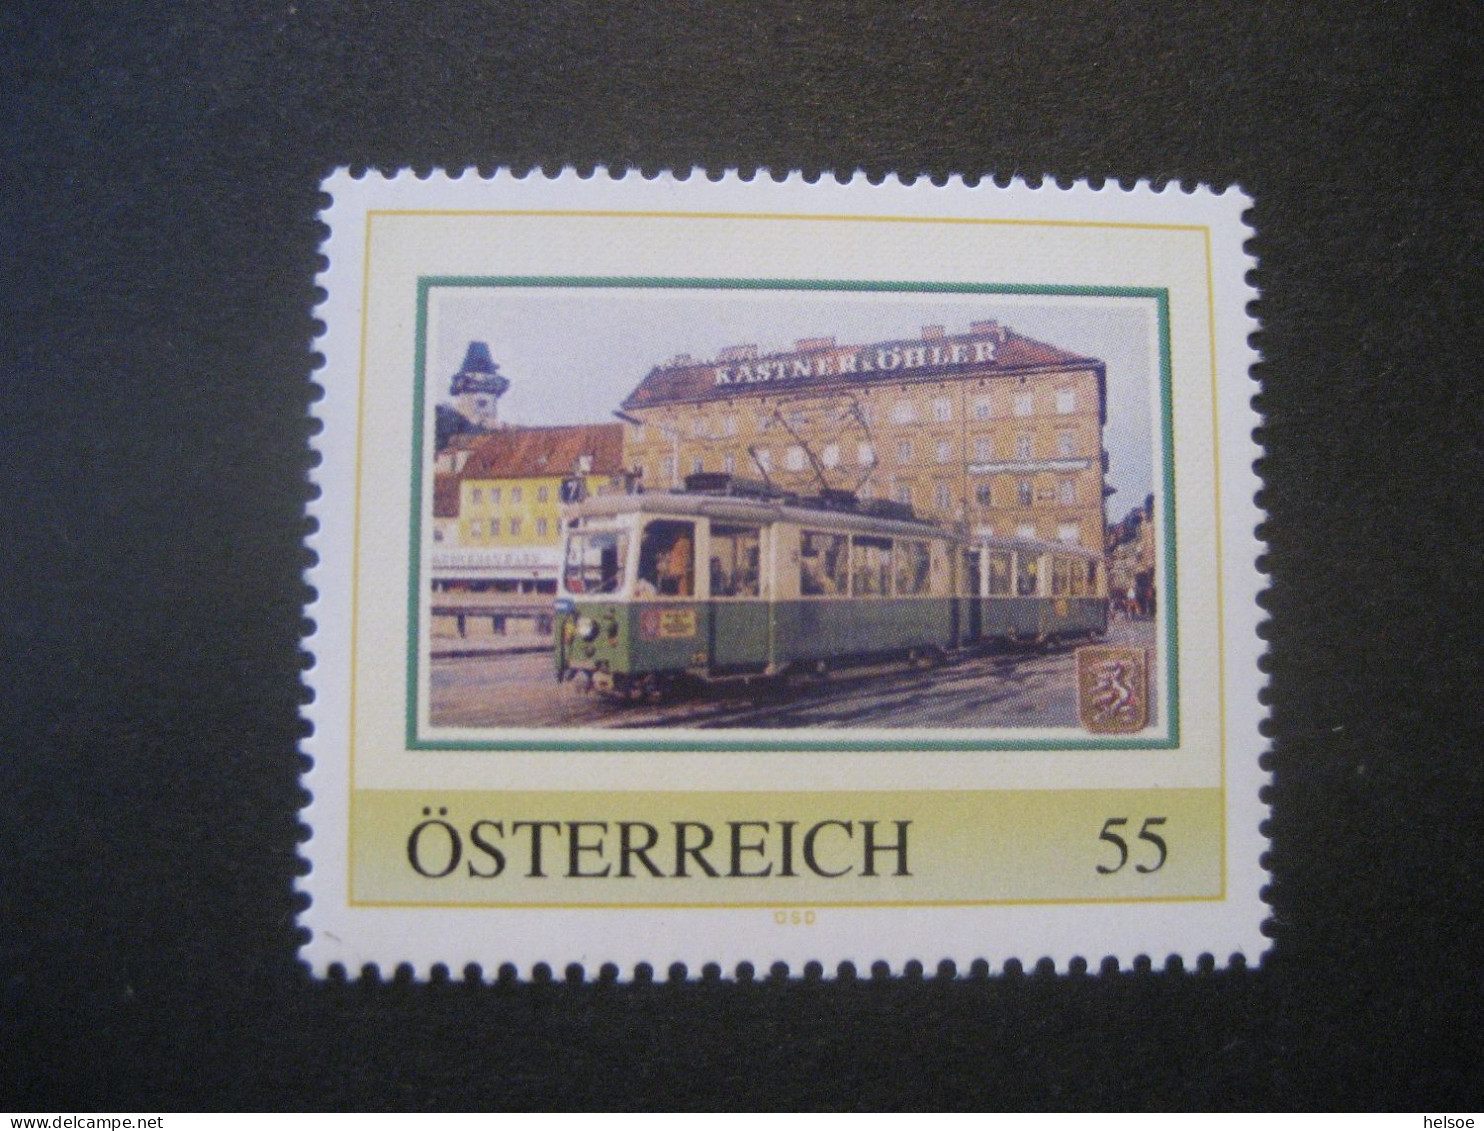 Österreich- PM Grazer Straßenbahn Ungebraucht - Persoonlijke Postzegels